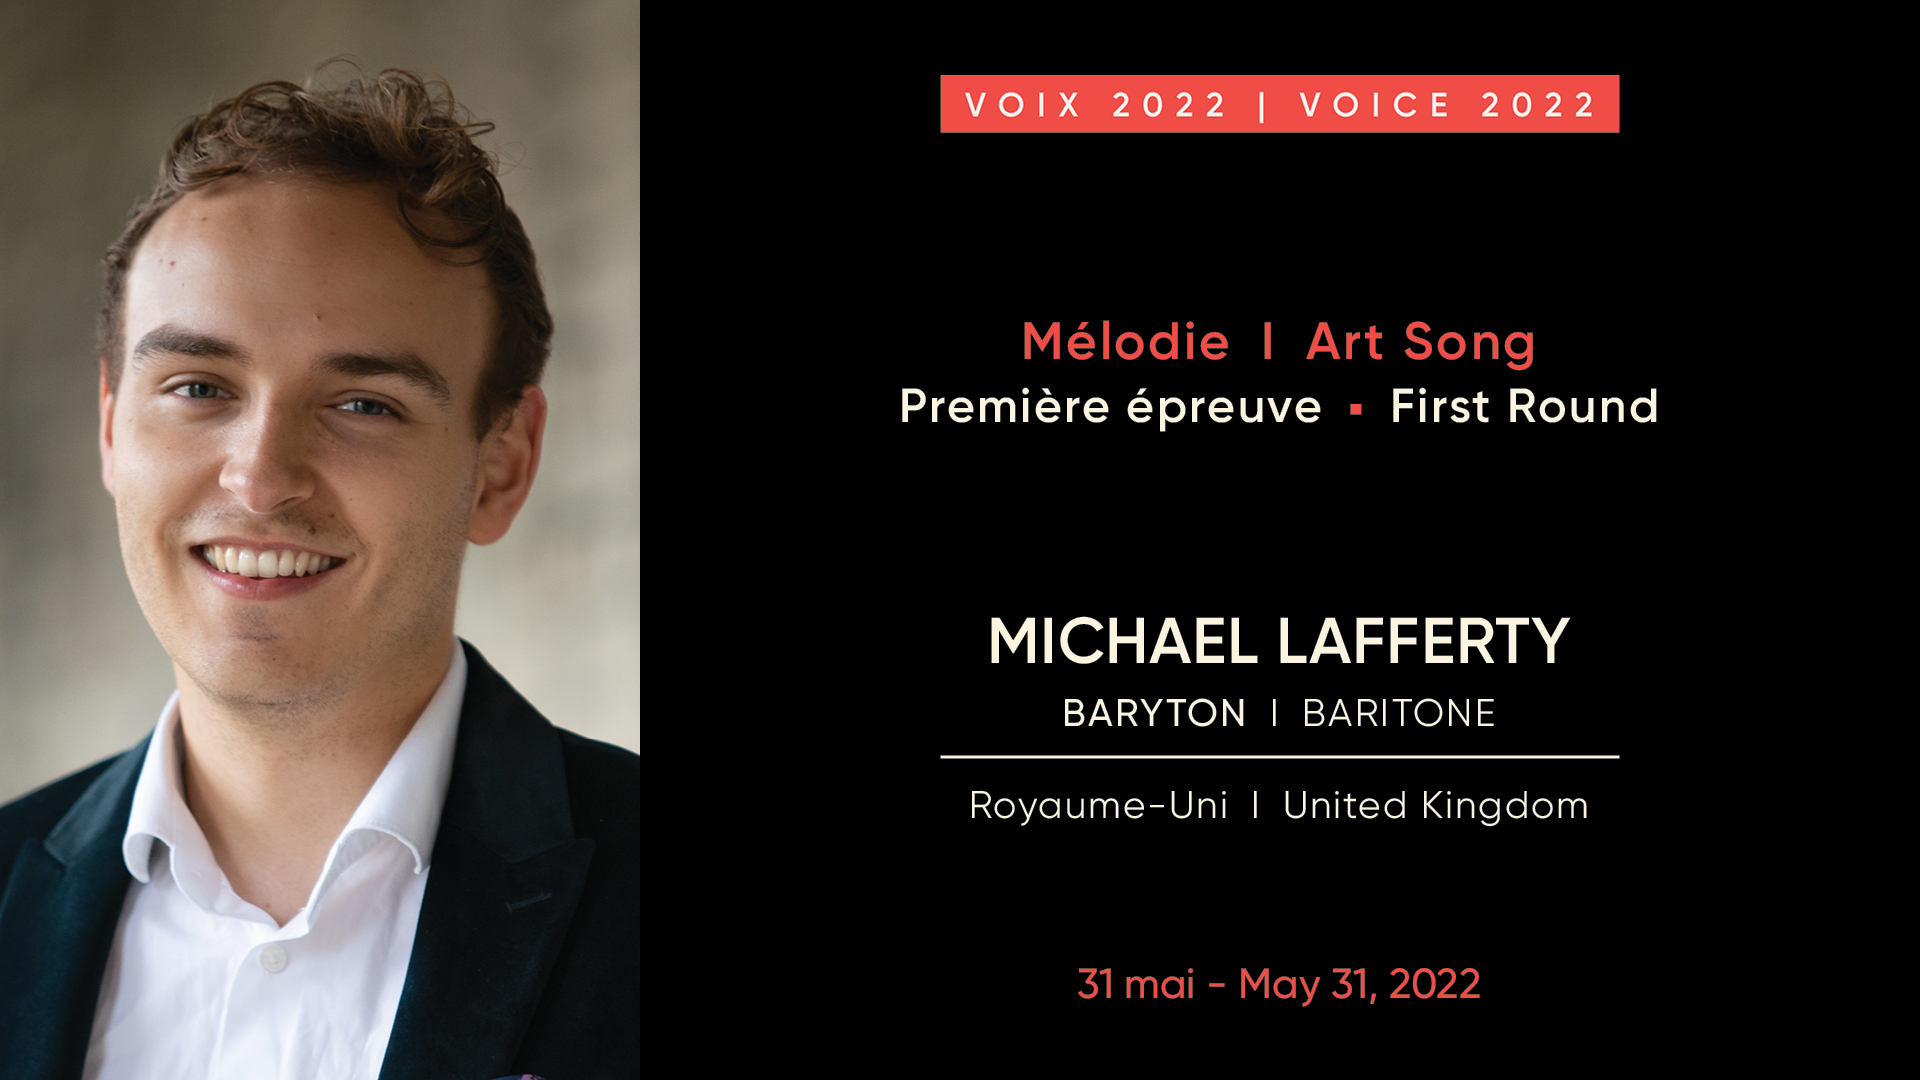 Michael Lafferty, baritone